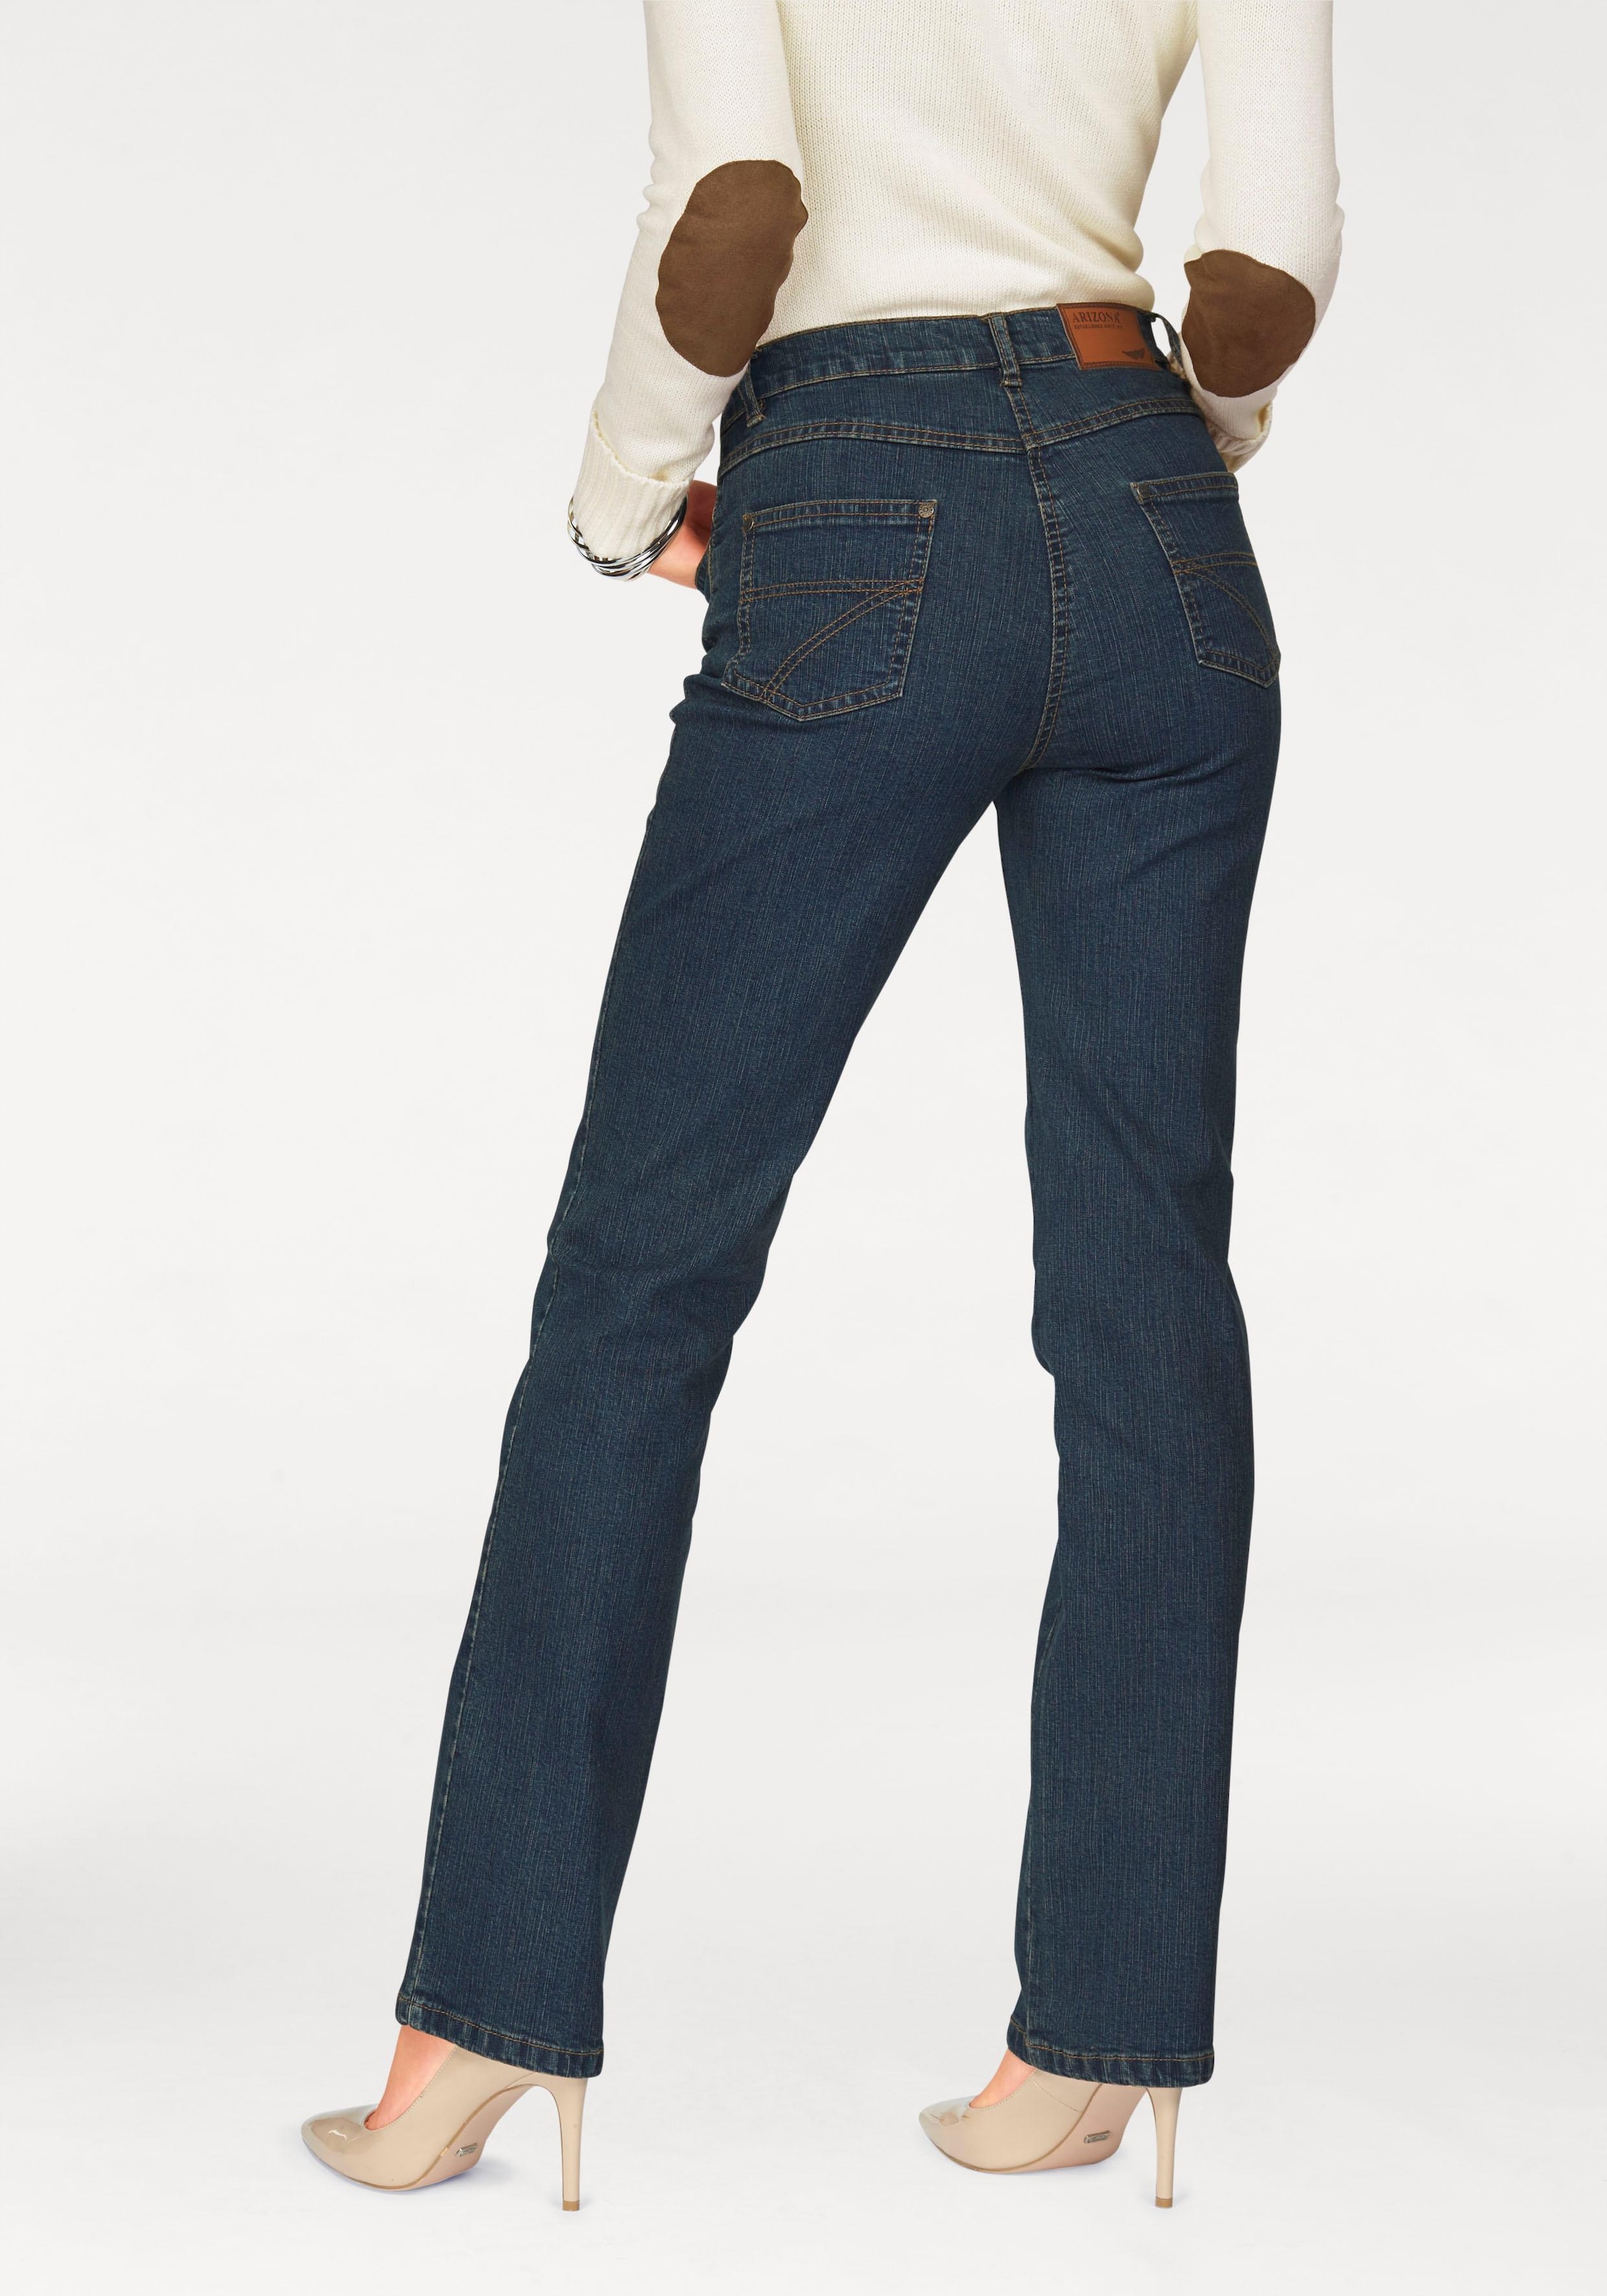 Arizona Hosen Jeans Fur Damen Kollektion 21 Baur